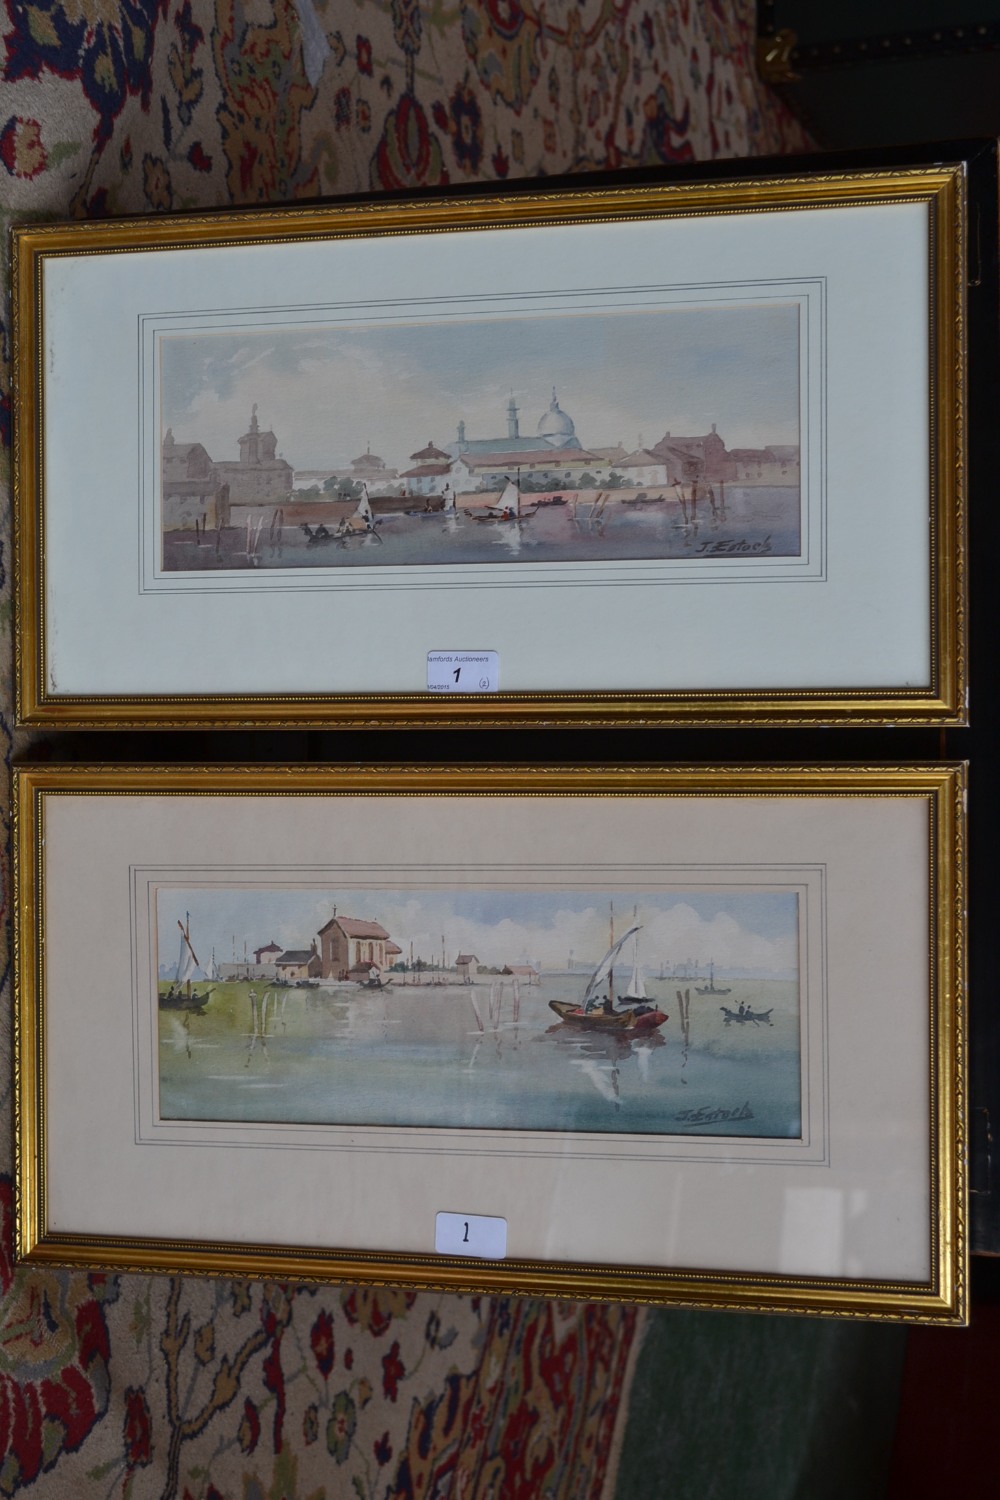 J**Estock
A Pair, Harbour Views
signed, watercolours, 12cm x 33.